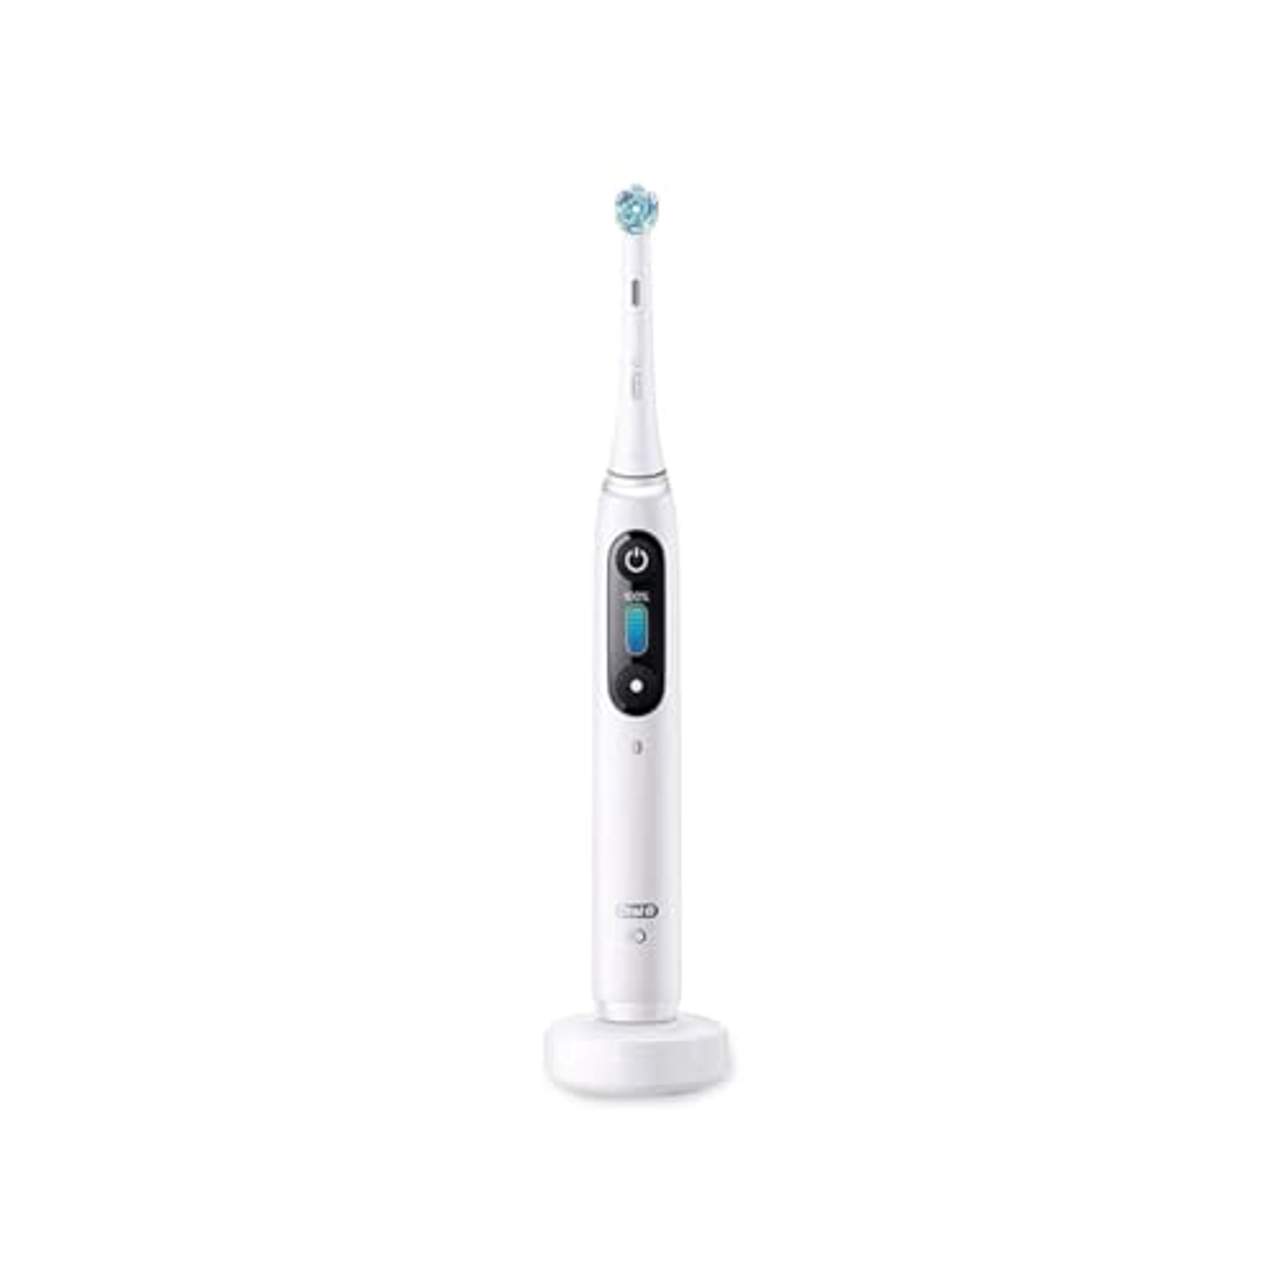 Oral-B iO Series 8 Elektrische Zahnbürste